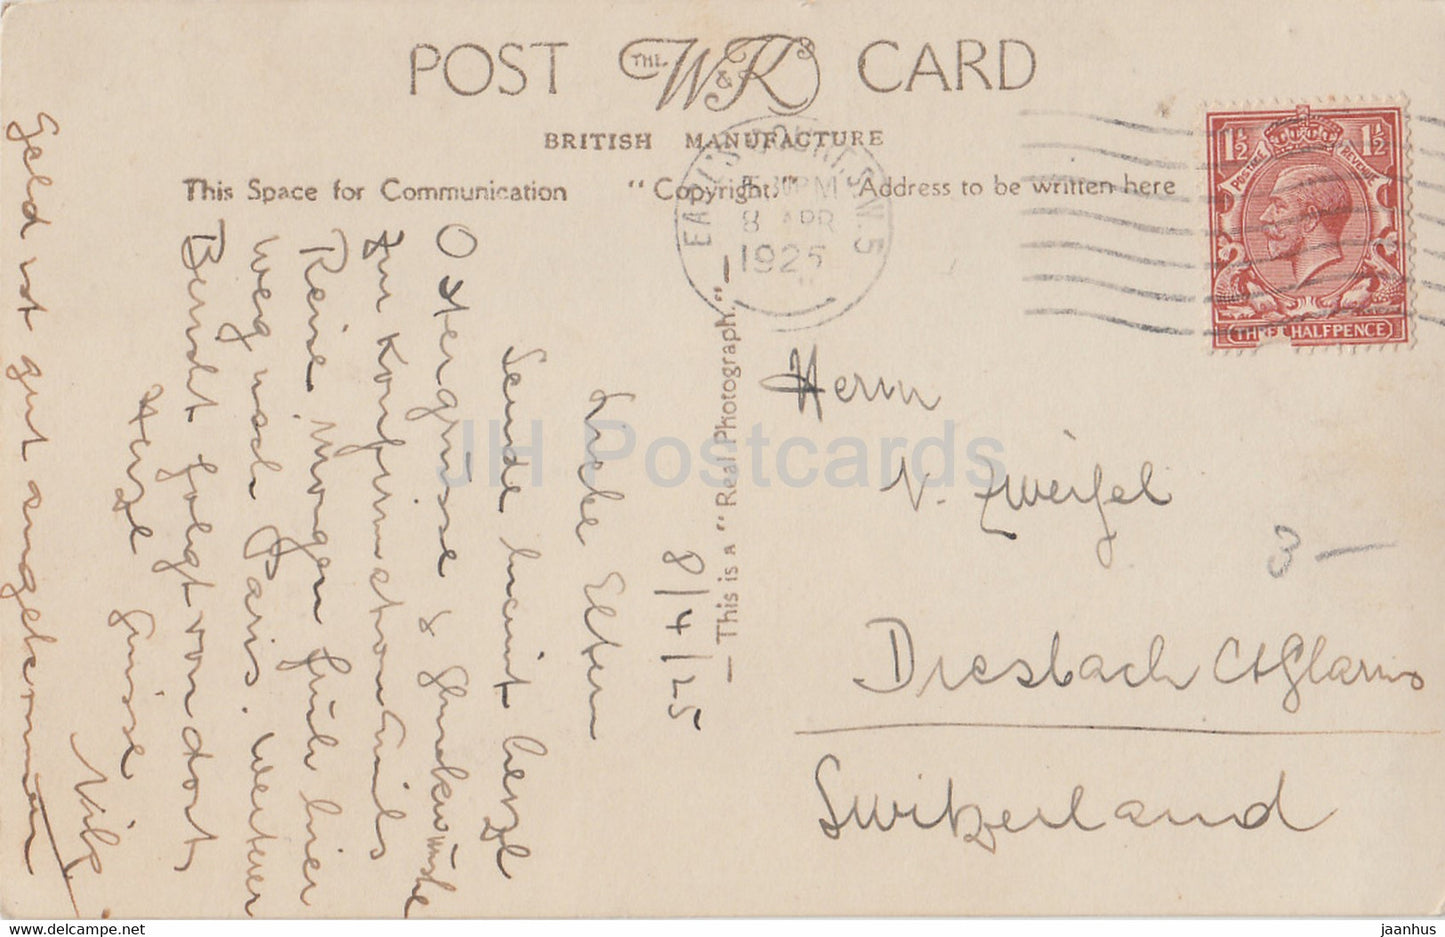 Londres - Cathédrale Saint-Paul - W &amp; K London - 139 - carte postale ancienne - 1925 - Angleterre - Royaume-Uni - utilisé